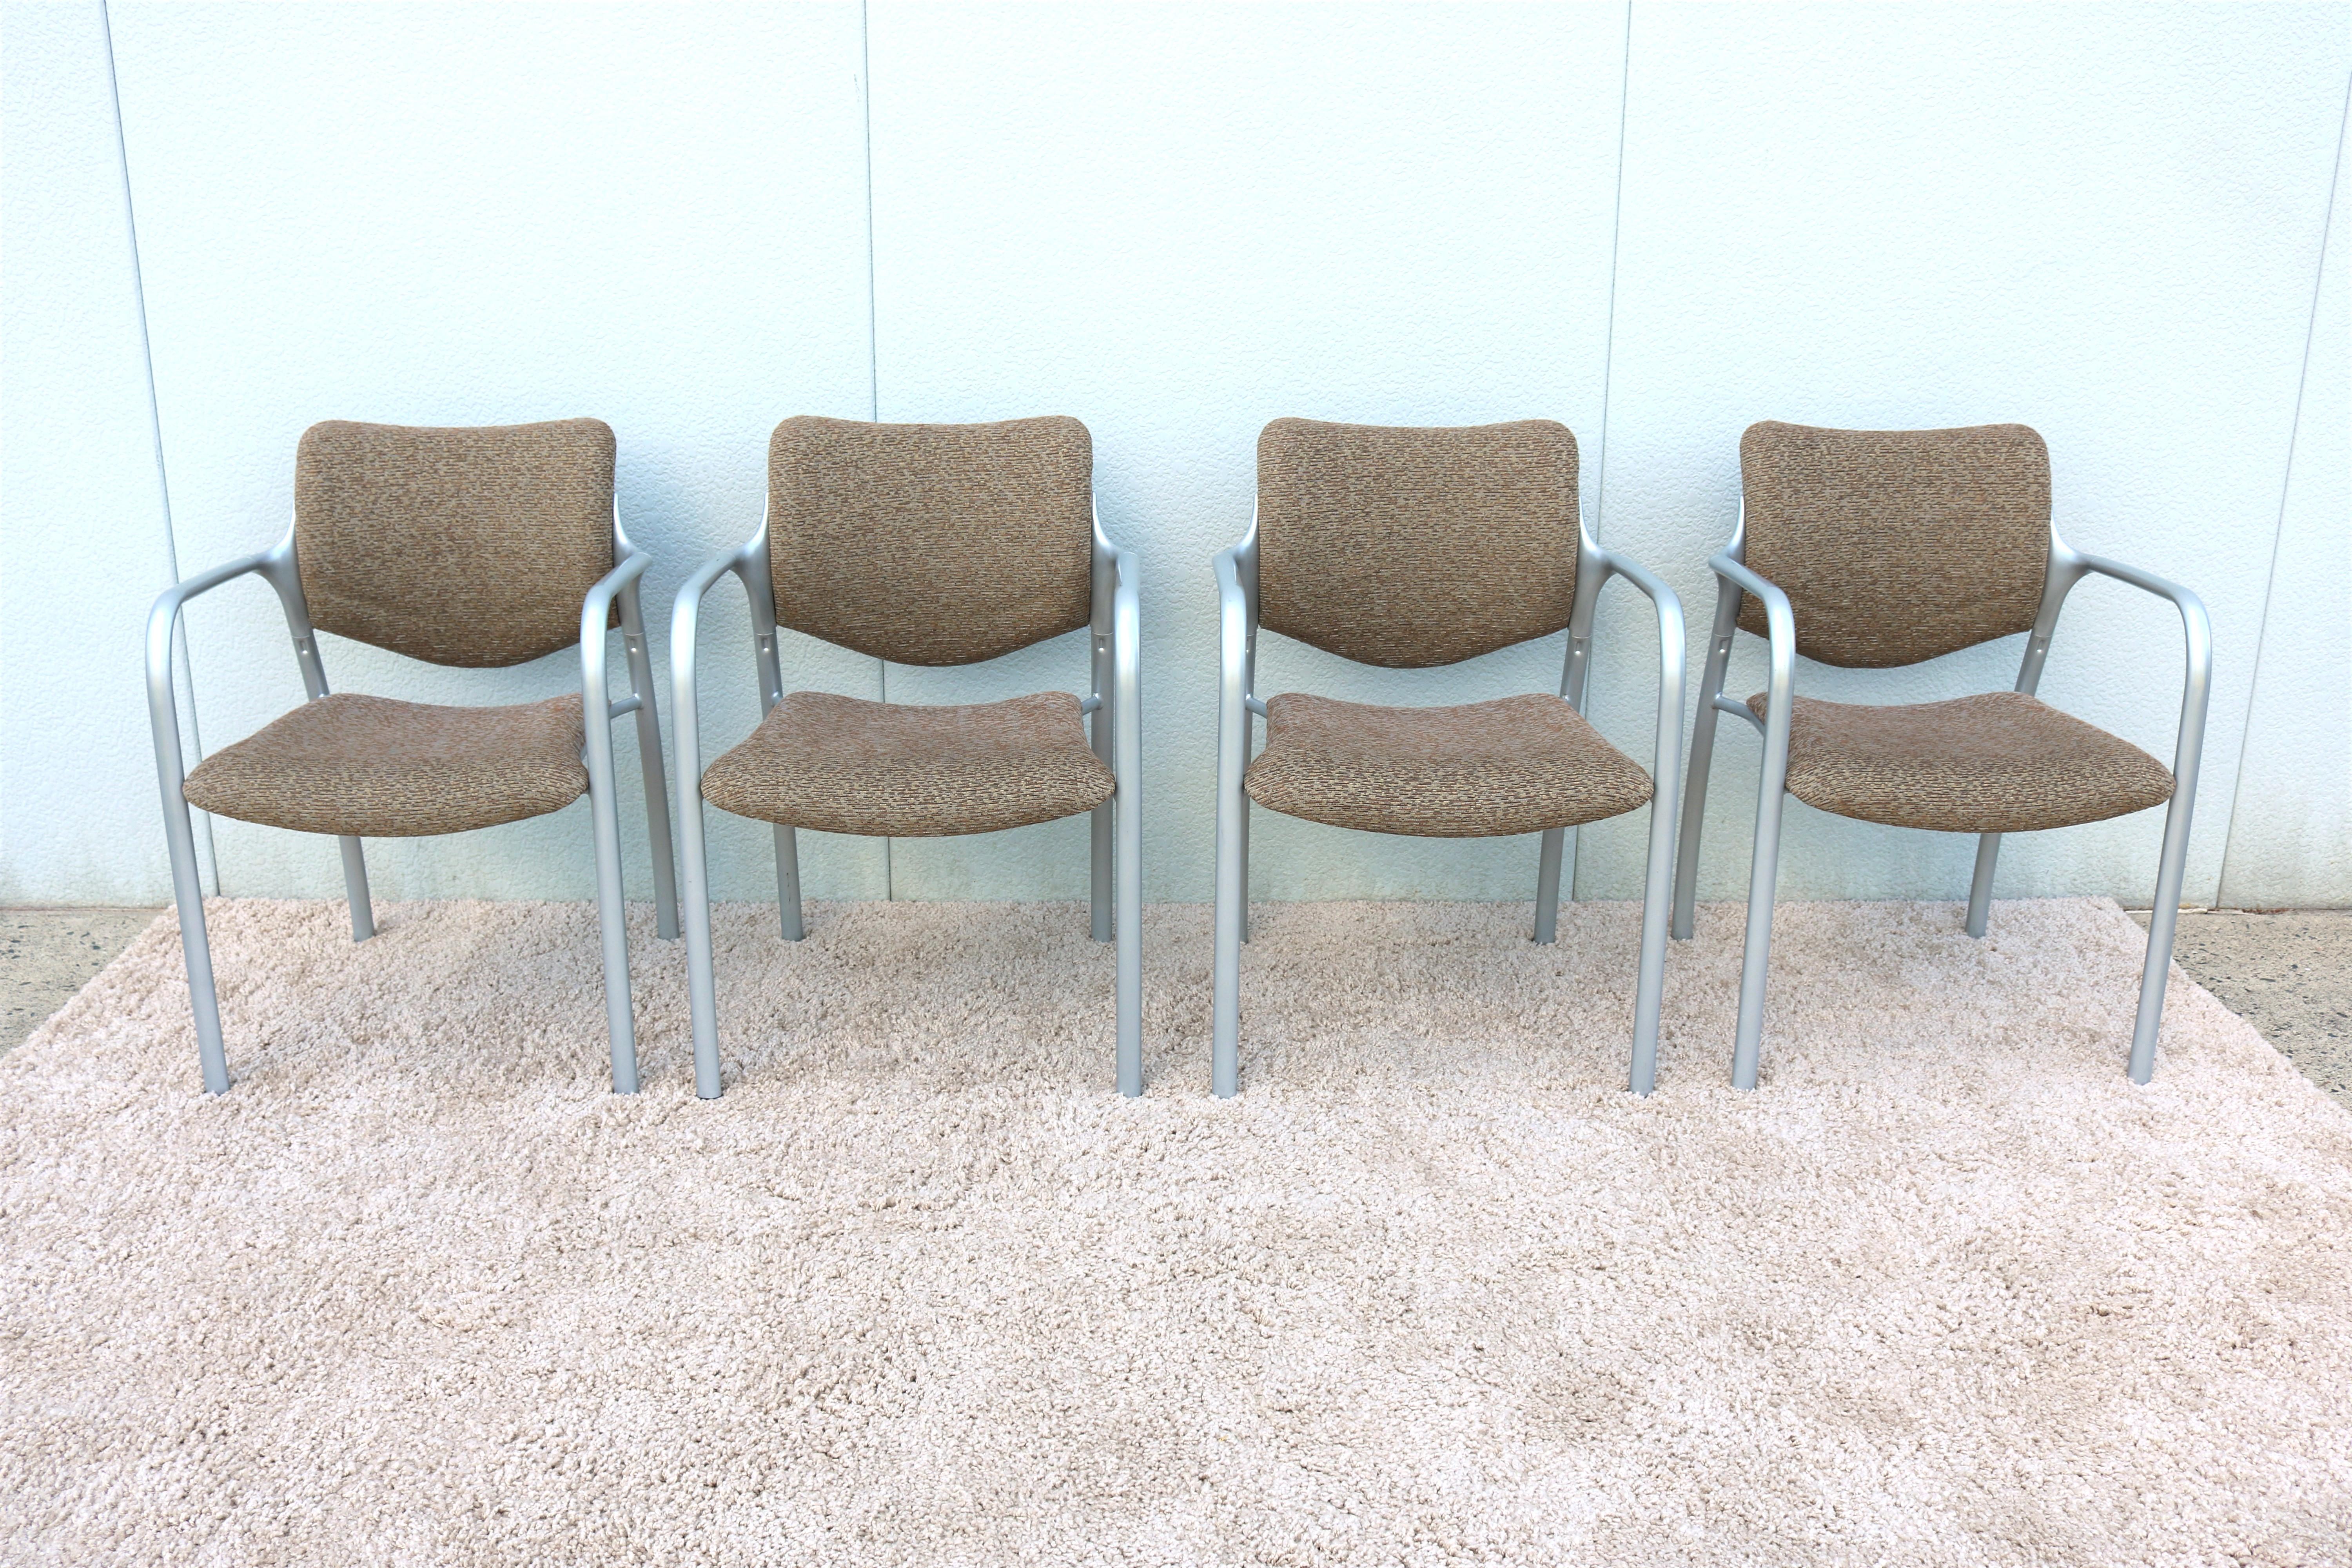 Der stapelbare Beistellstuhl Aside von Herman Miller ist sehr bequem und hat einen klaren, modernen Look.
Mit seinen dicken Kissen und gesunden Konturen bietet er den Menschen einen bequemen Sitzplatz.
Durch sein geringes Gewicht und seine